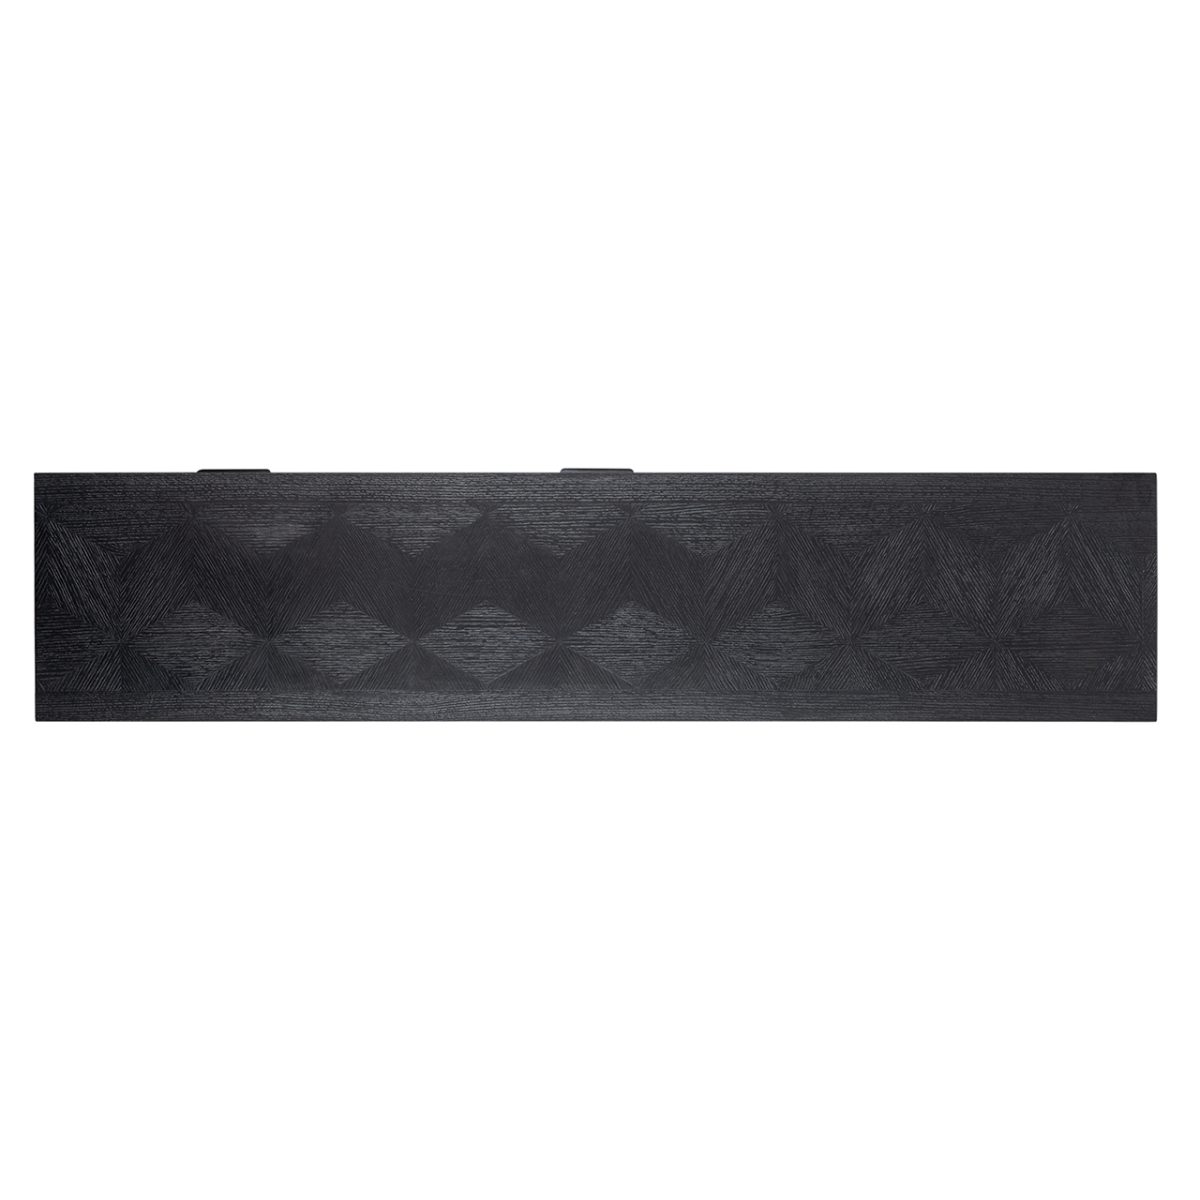 7551 - TV-dressoir Blax 2-kleppen 1-plank (Black)